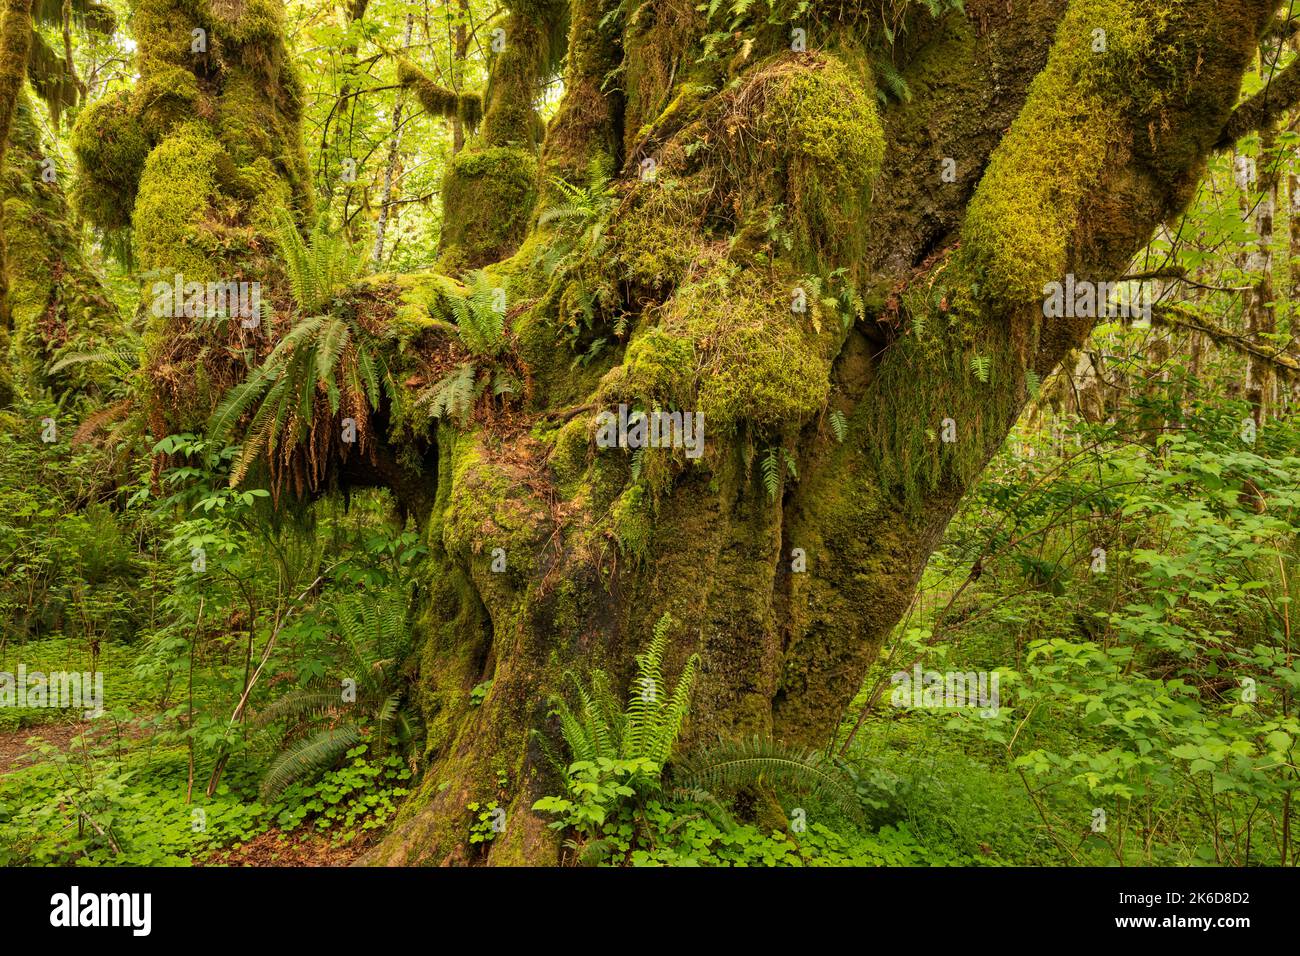 WA22245-00...WASHINGTON - albero dell'acero delle foglie grandi che serve come giardino per i vari tipi di muschio e felci nella foresta pluviale di Quinault di nazionale olimpica Foto Stock